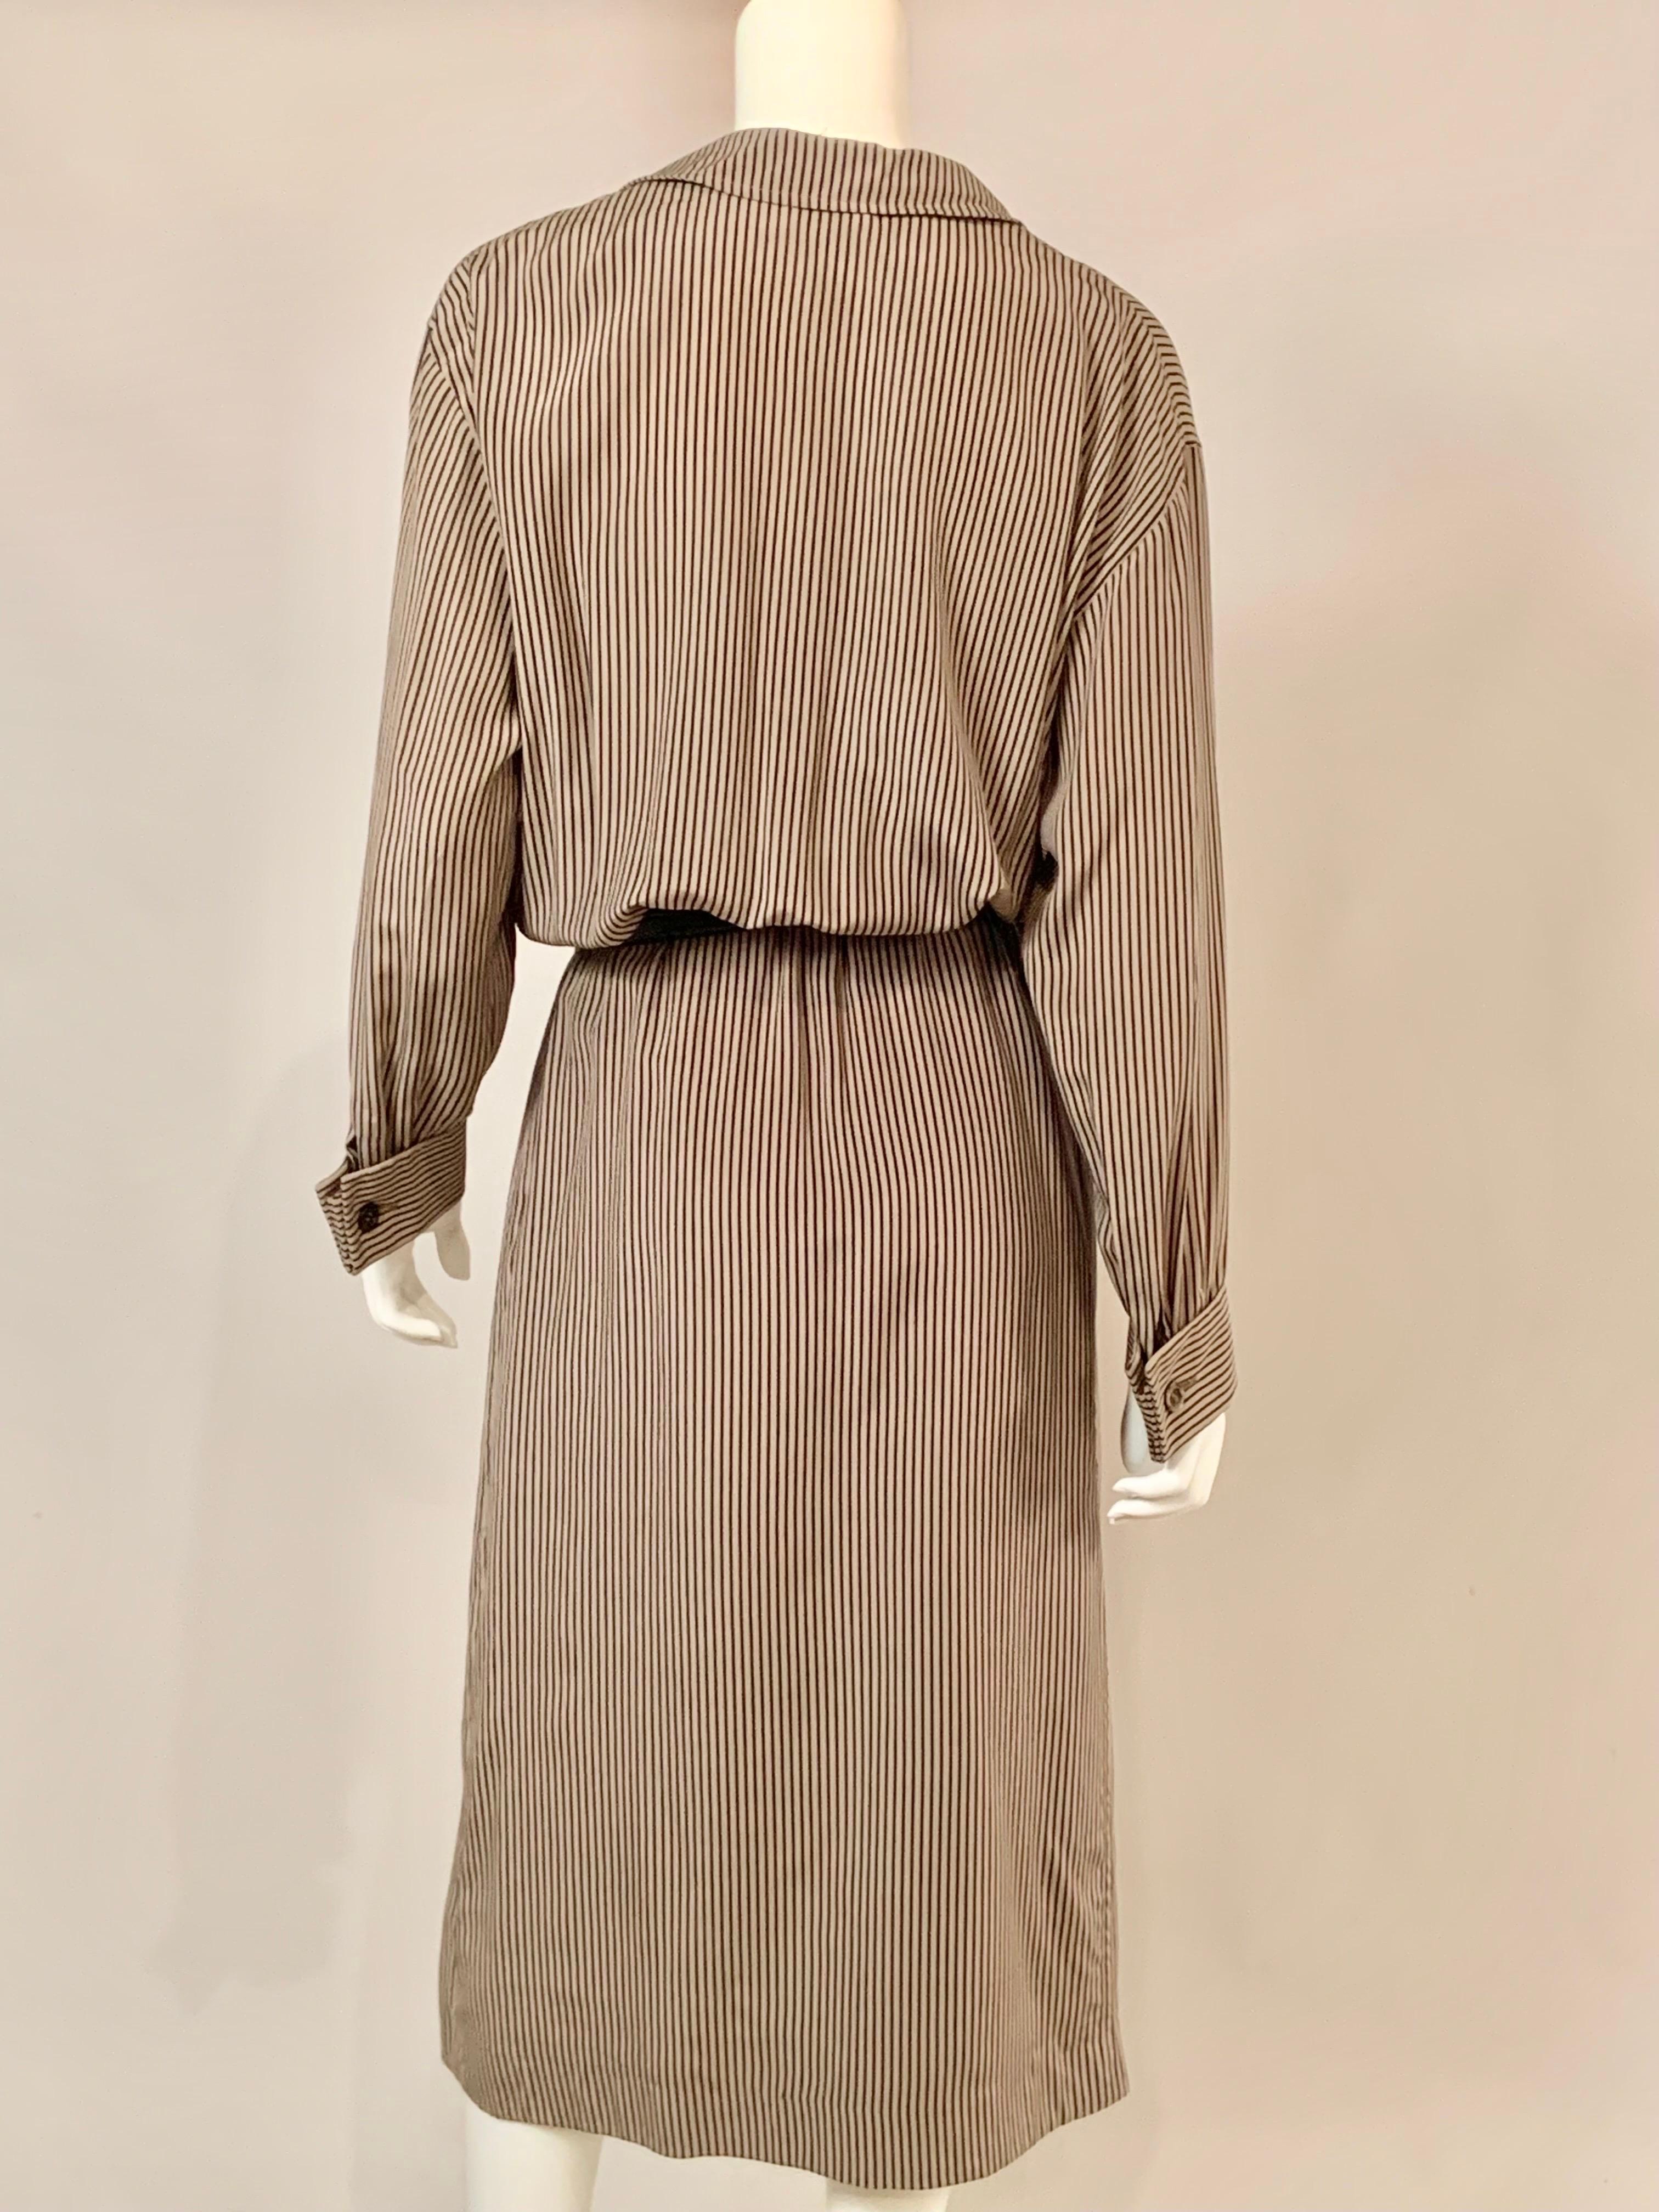 Salvatore Ferragamo Black and Tan Striped Silk Wrap Dress For Sale 3